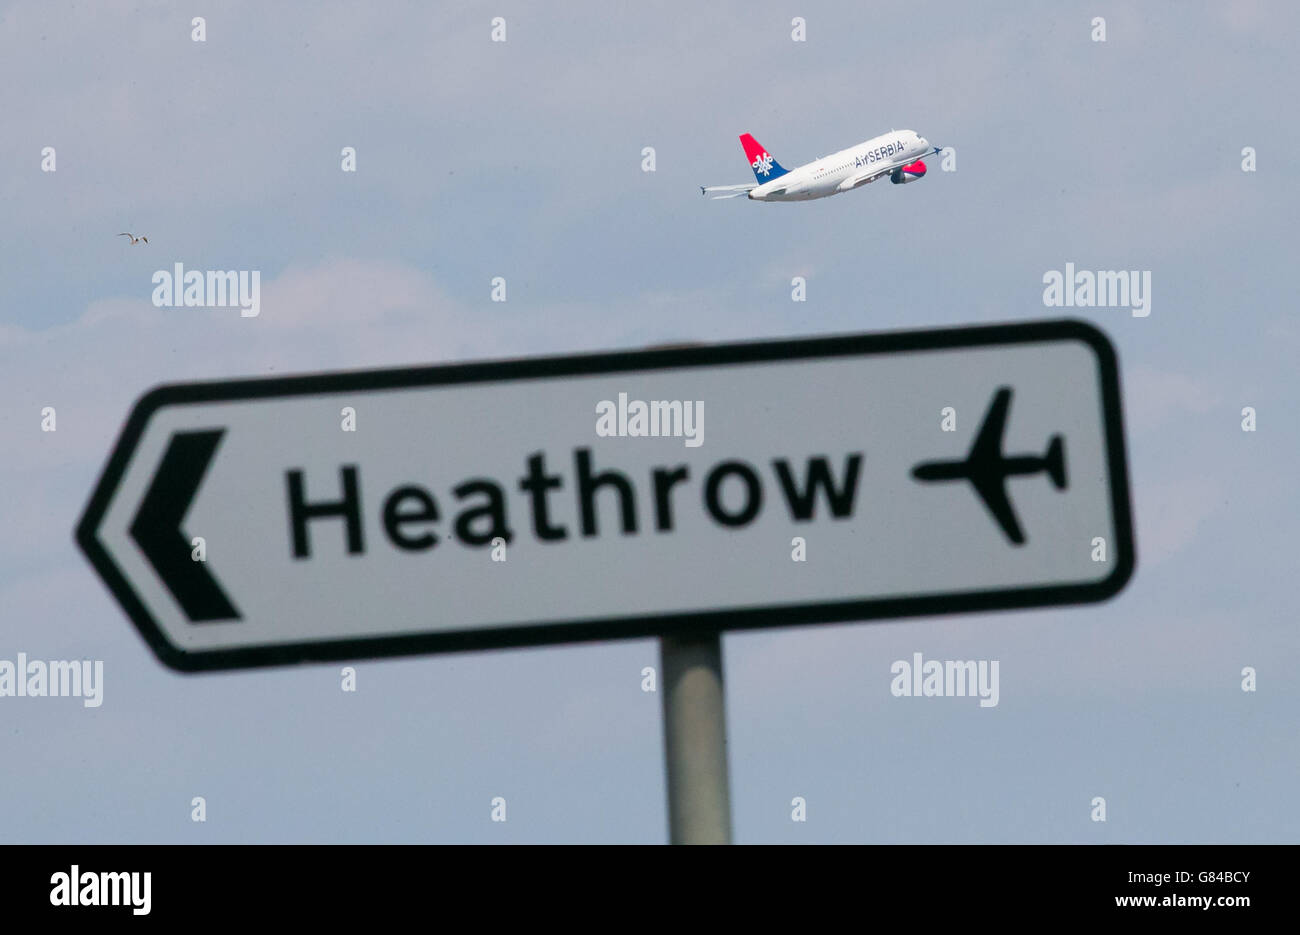 Un aereo Air Serbia decolli all'aeroporto di Heathrow. Un acceso dibattito sulle capacità aeroportuali sta imperversa dopo che un rapporto atteso da tempo raccomandava di costruire una nuova pista a Heathrow piuttosto che a Gatwick. Foto Stock